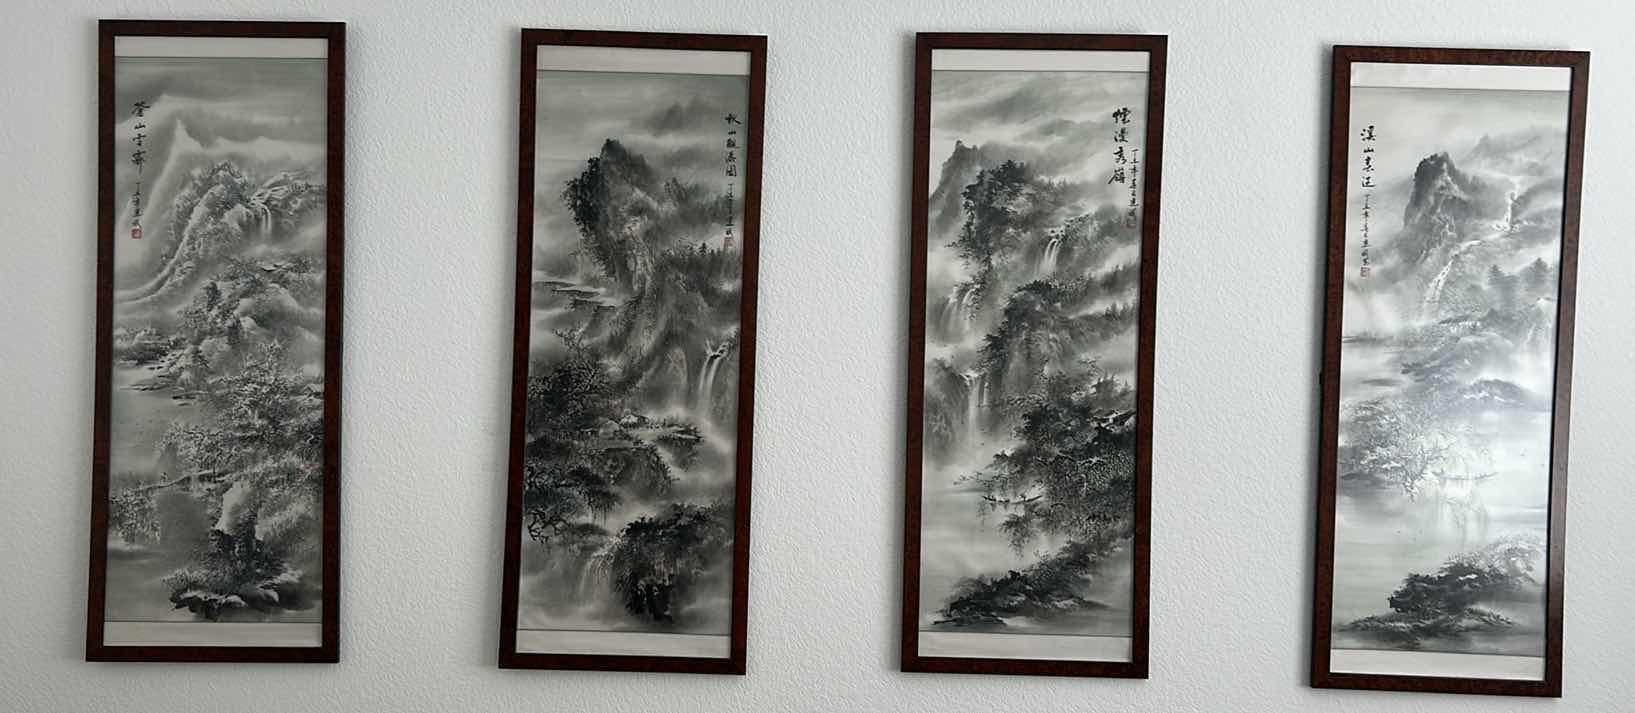 Photo 1 of 4 PANELS ASIAN ARTWORK FRAMED 17 1/2” x 46”